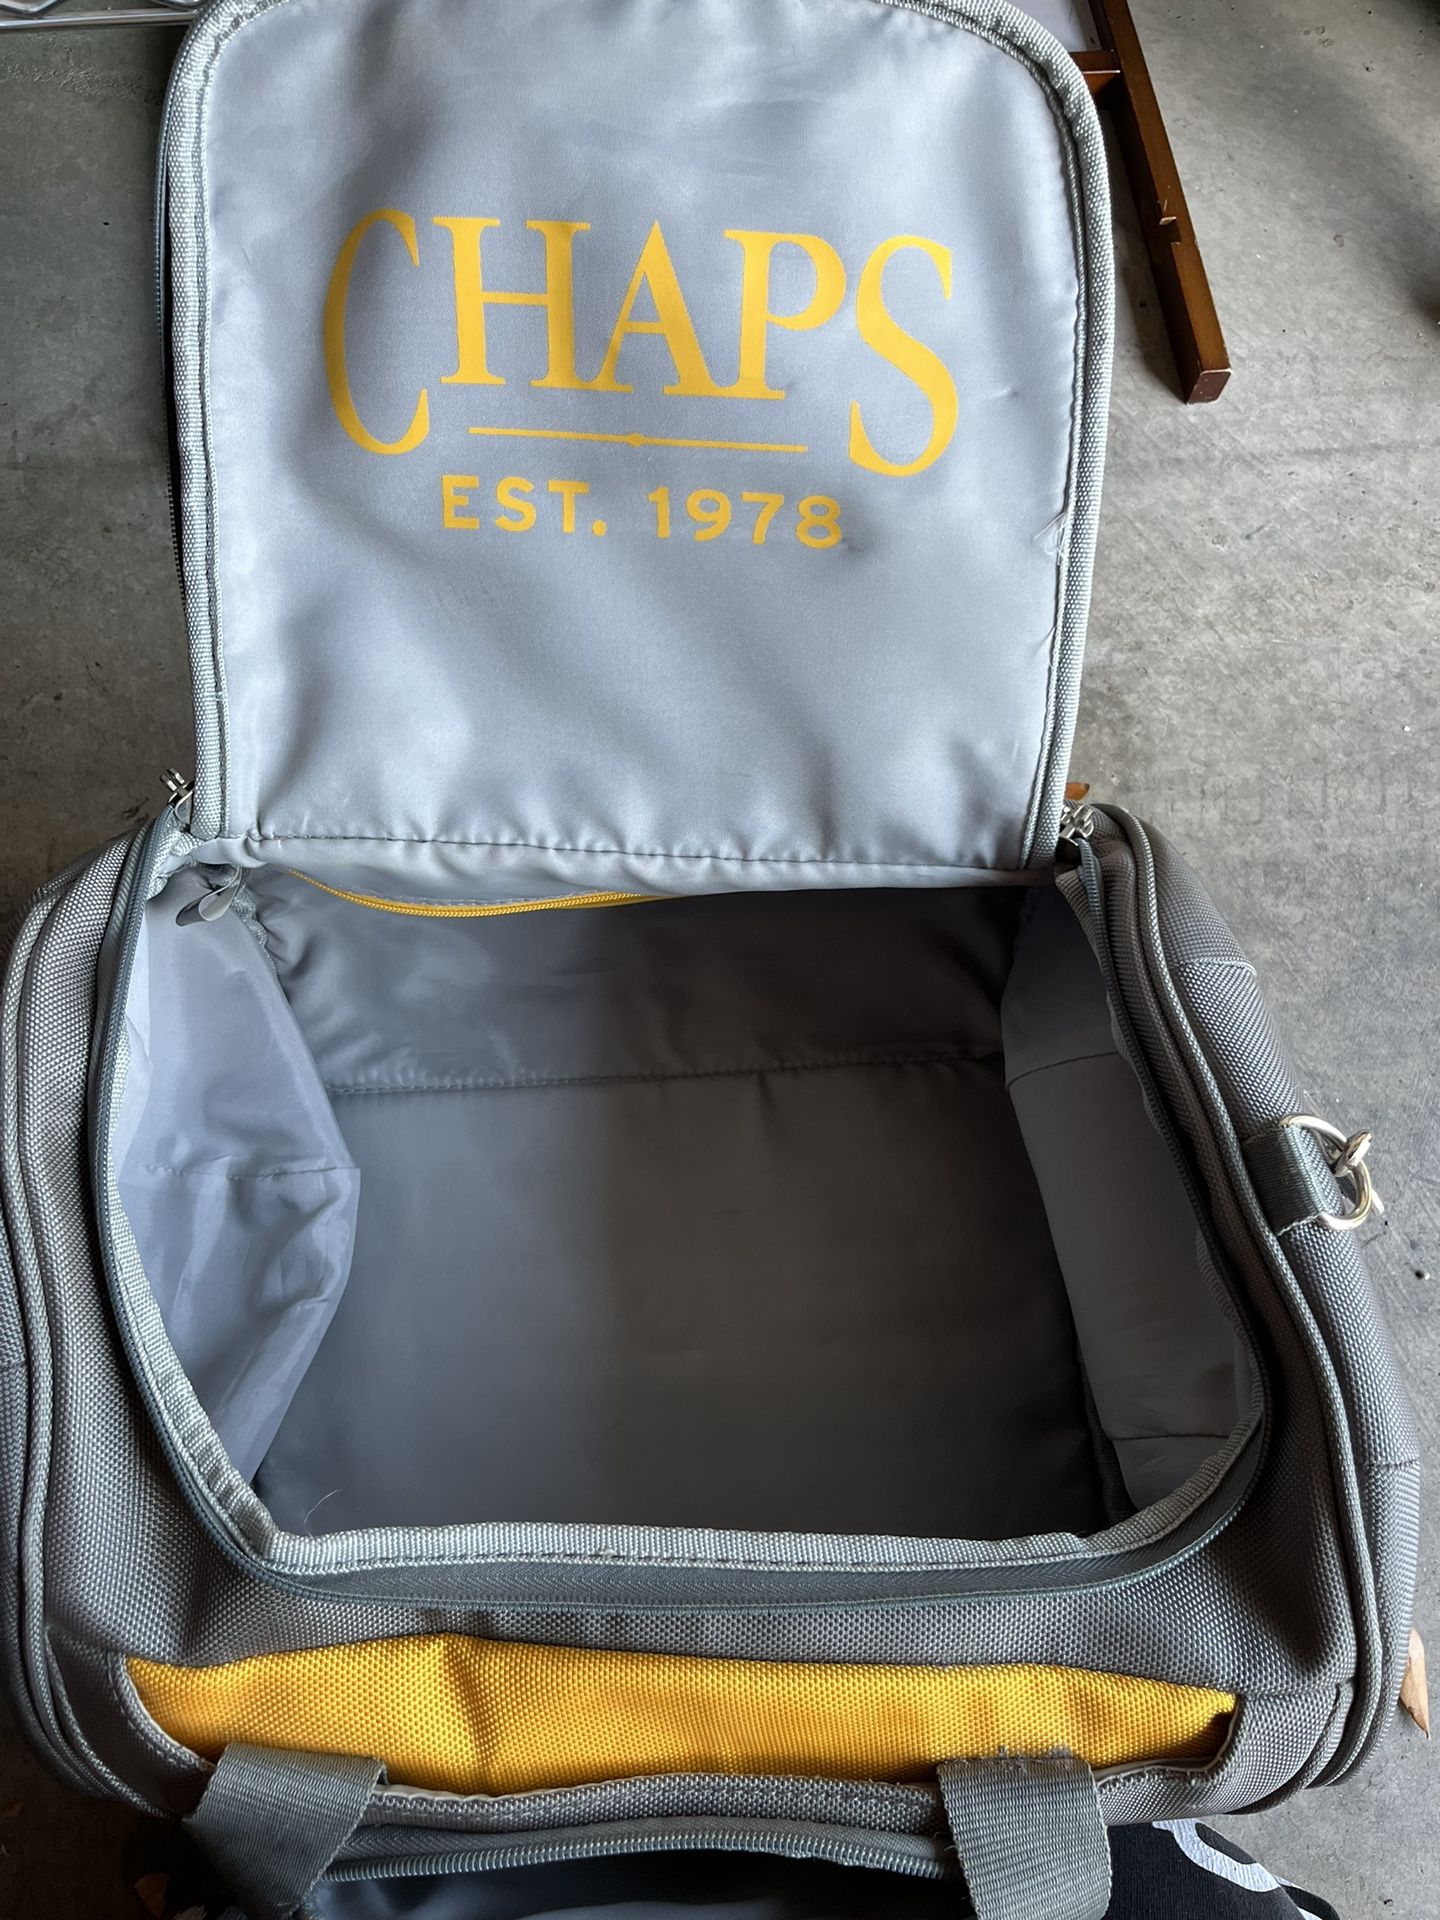 Chaos Duffle Bag